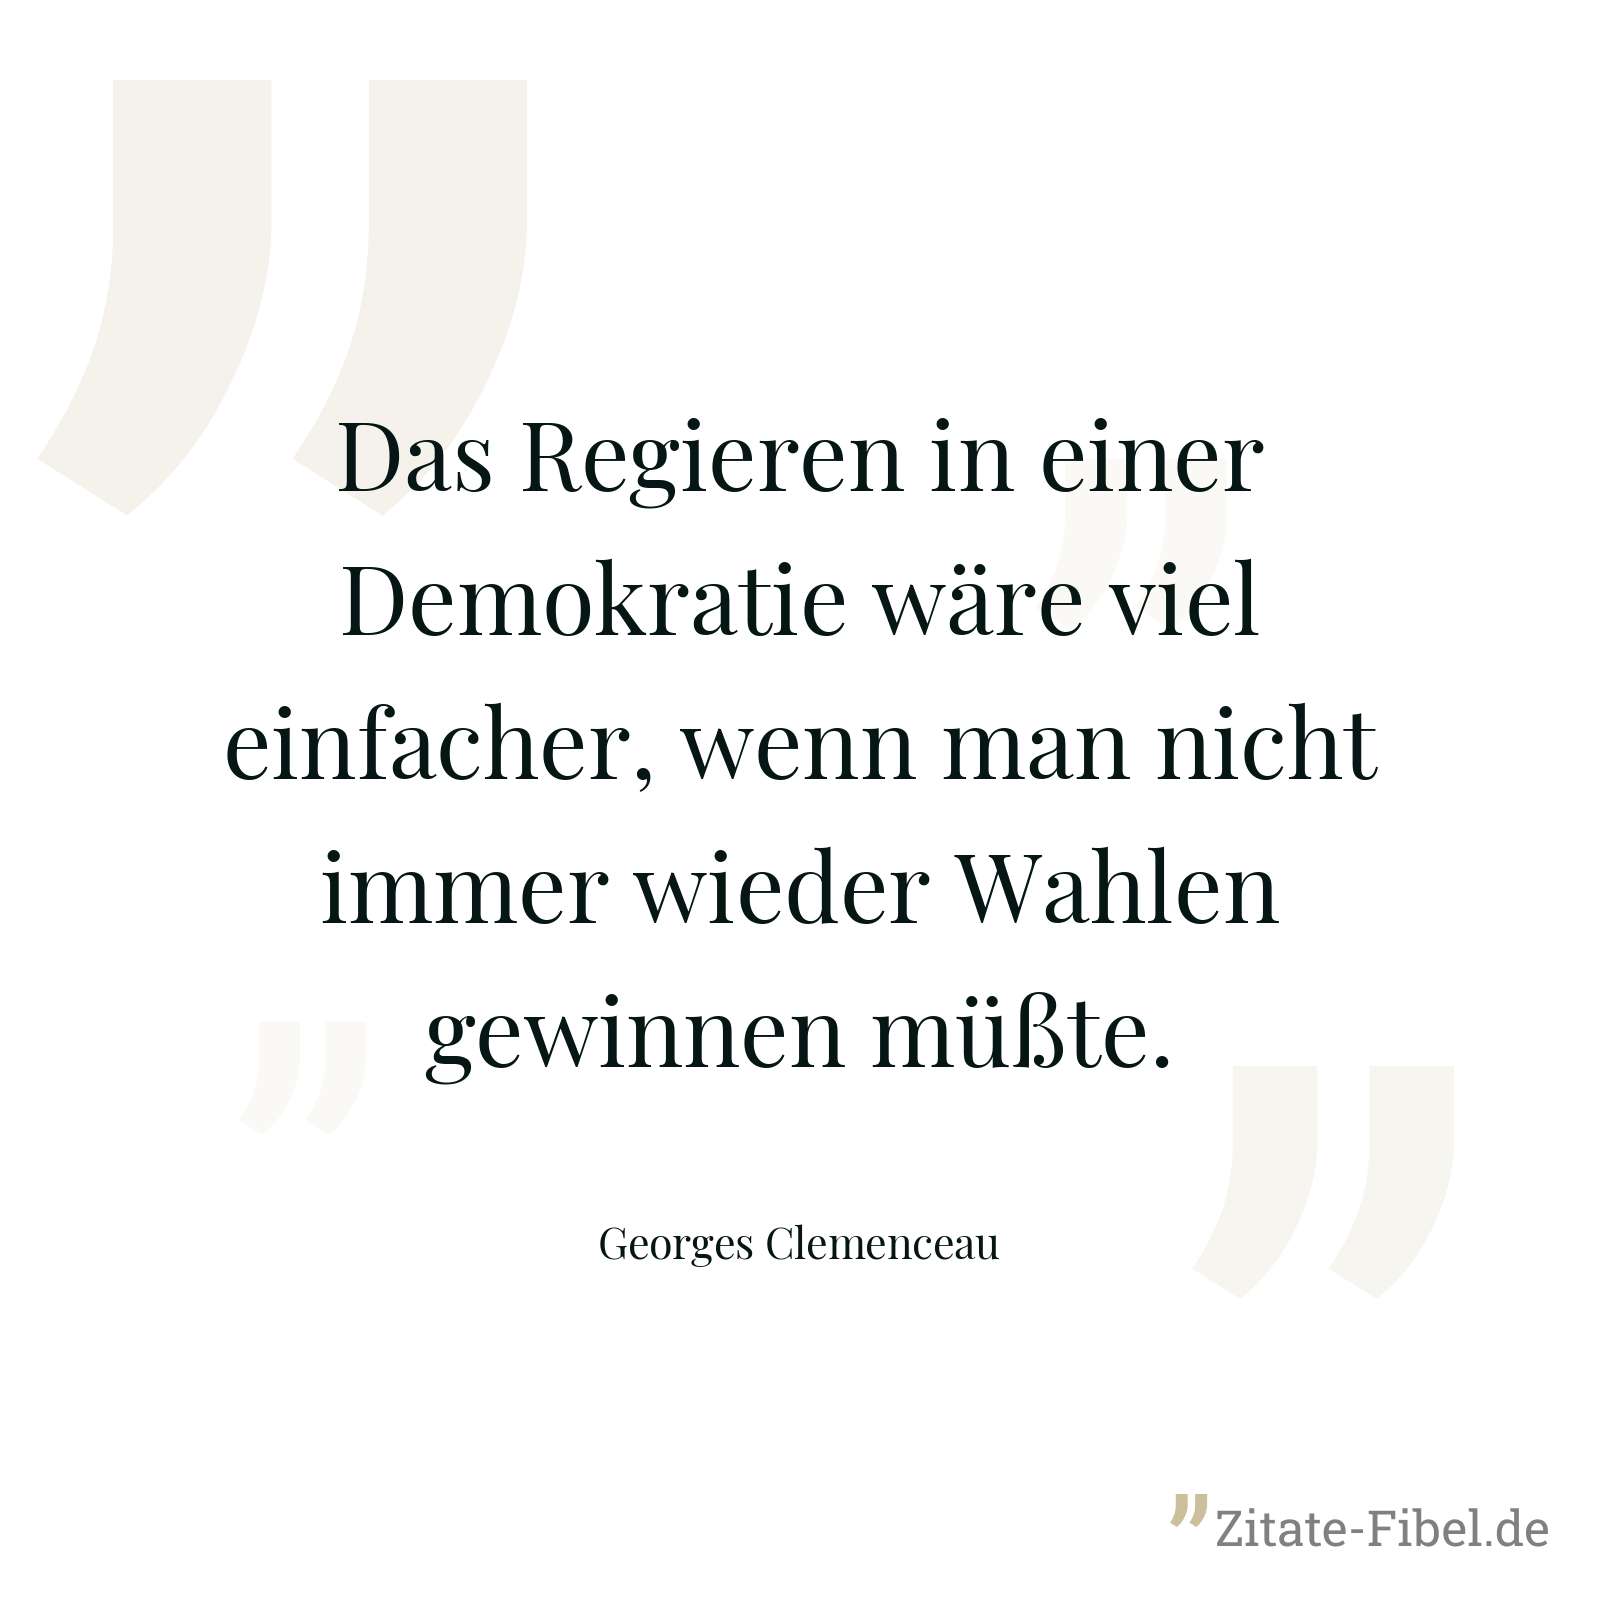 Das Regieren in einer Demokratie wäre viel einfacher, wenn man nicht immer wieder Wahlen gewinnen müßte. - Georges Clemenceau